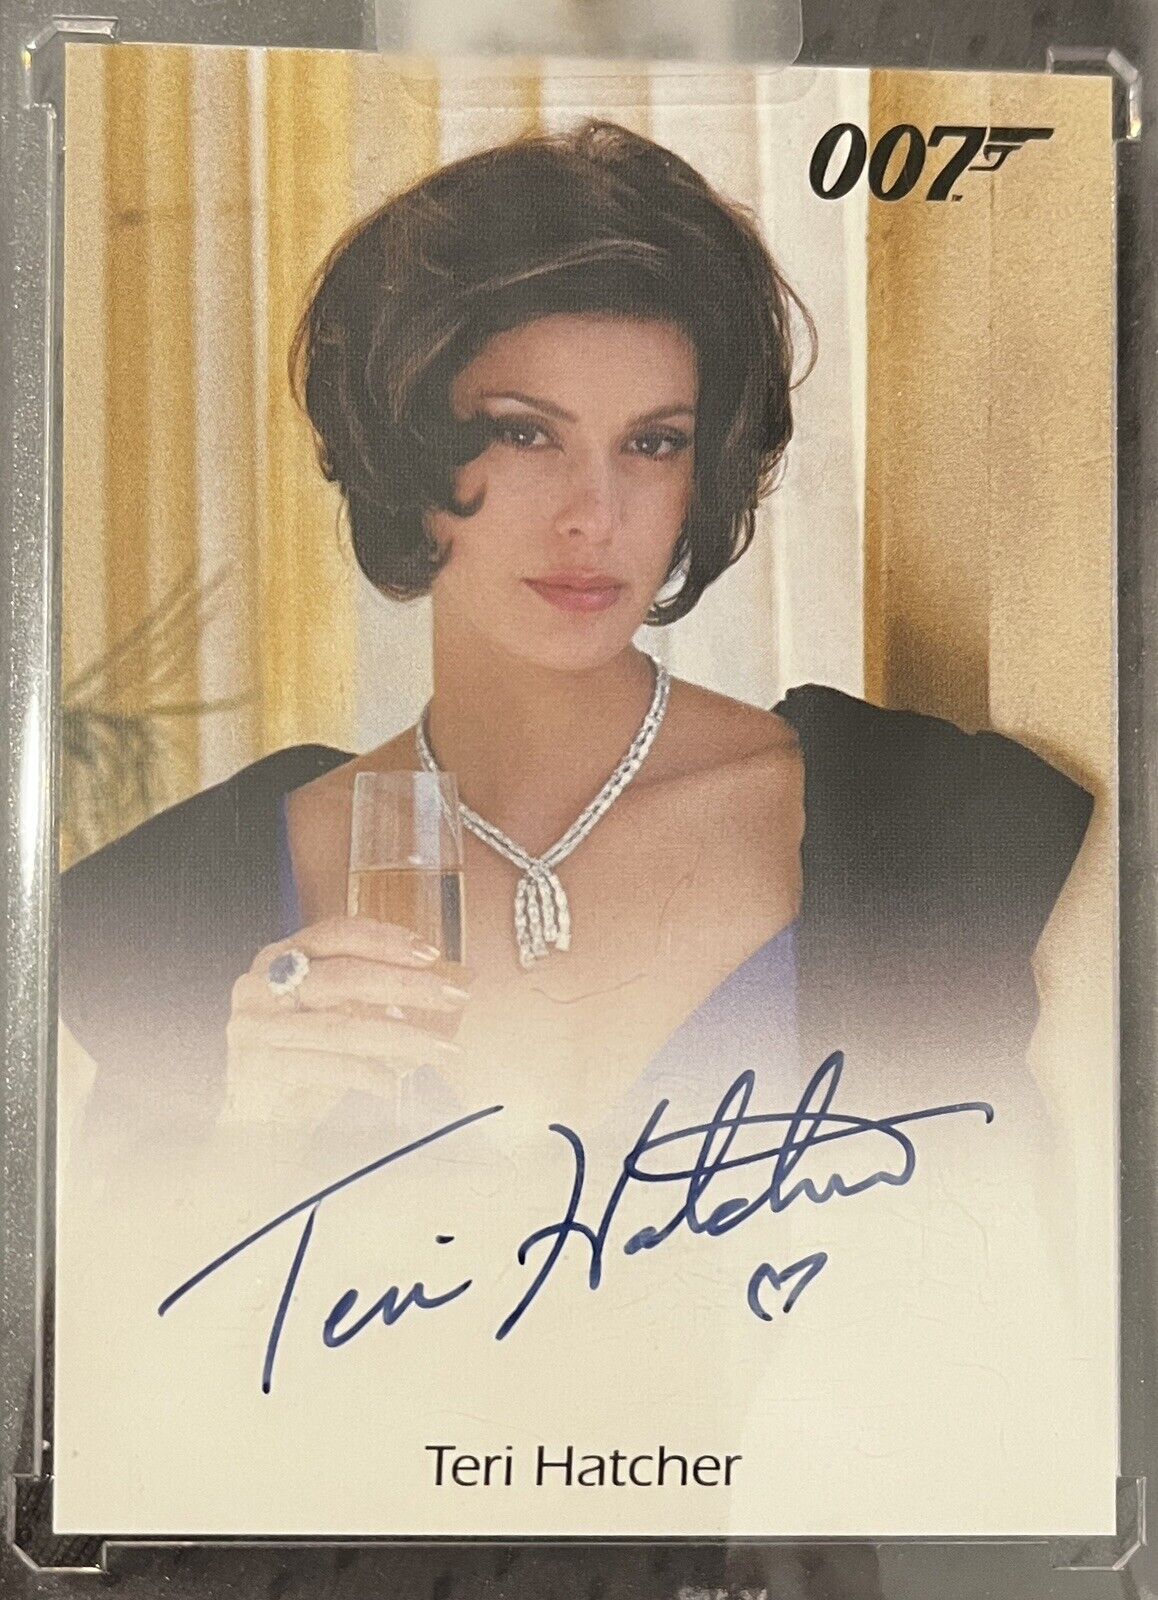 2015 James Bond Archives TERI HATCHER as Paris Carver Autograph Card Full Bleed